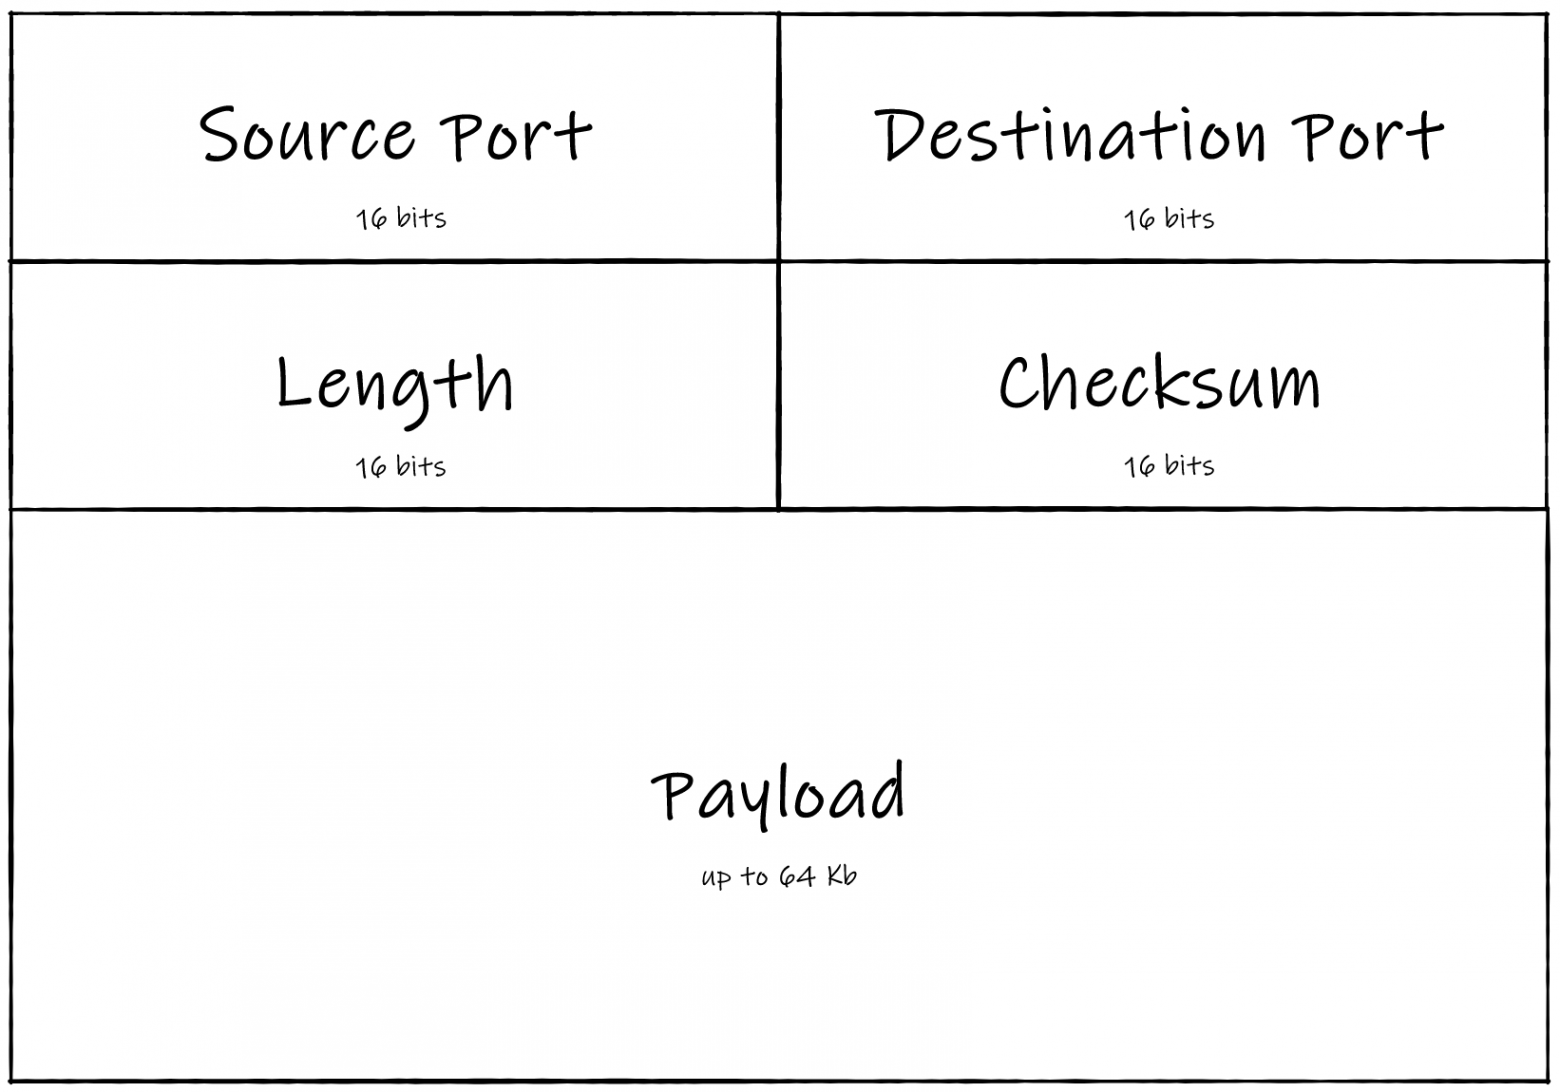 Payload – это полезная нагрузка; сообщение, которое датаграмма должна передать получателю